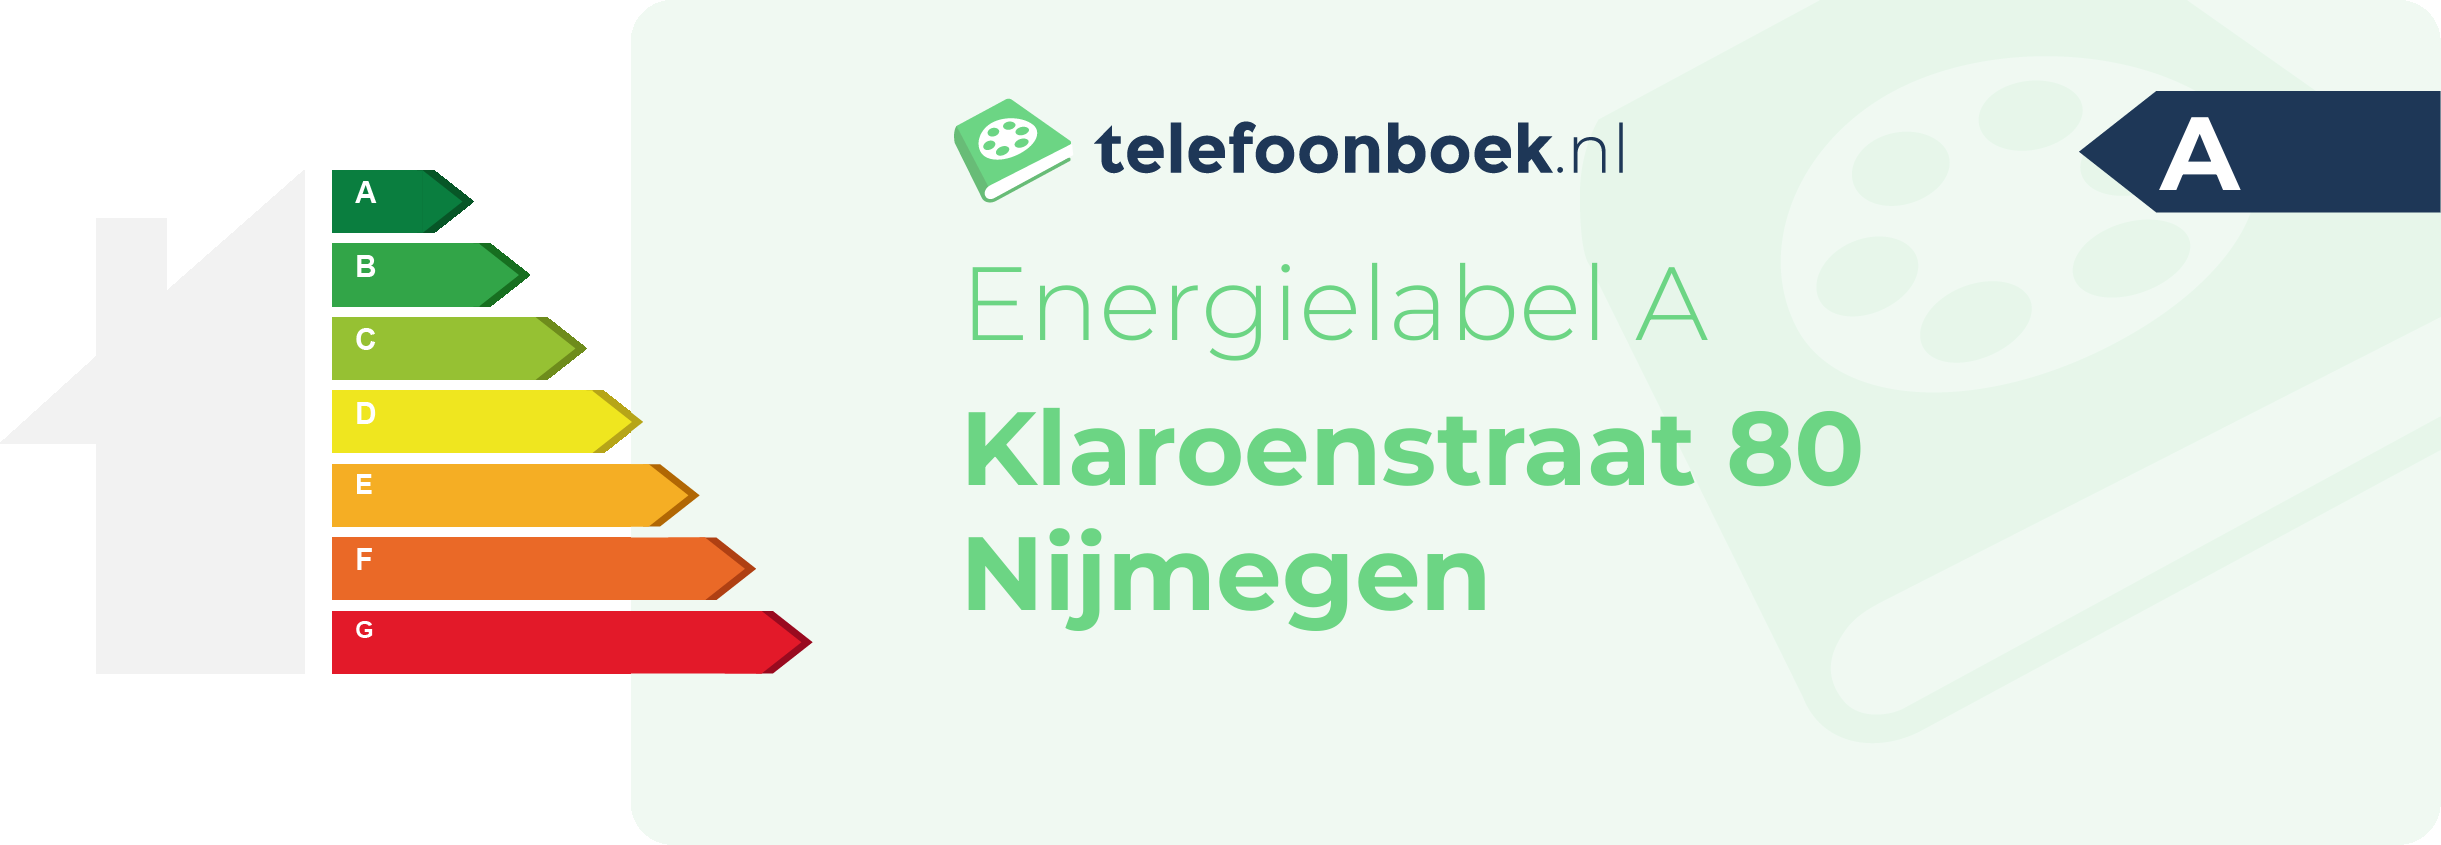 Energielabel Klaroenstraat 80 Nijmegen